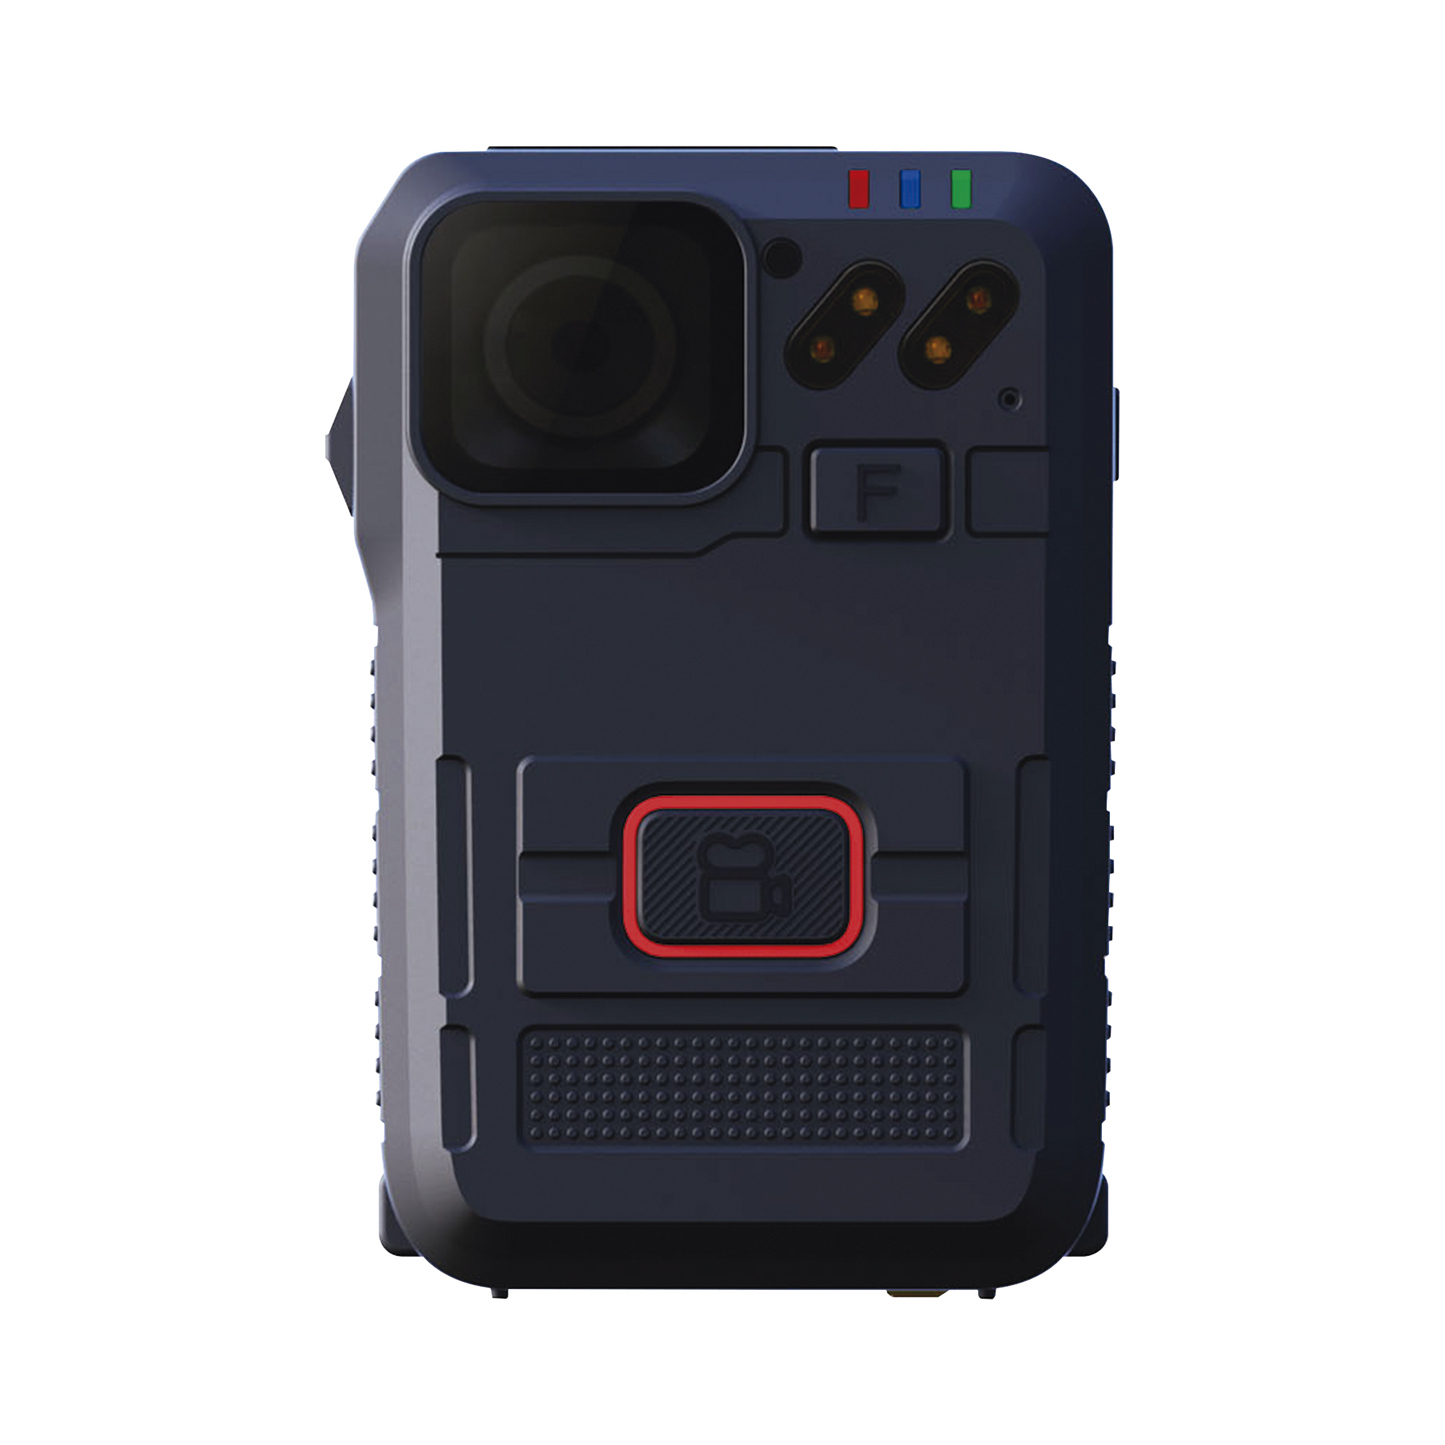 Body Camera para Seguridad, Video Full HD, Descarga de Vídeo automática con estación, Pantalla TFT con indicador de batería y memoria.